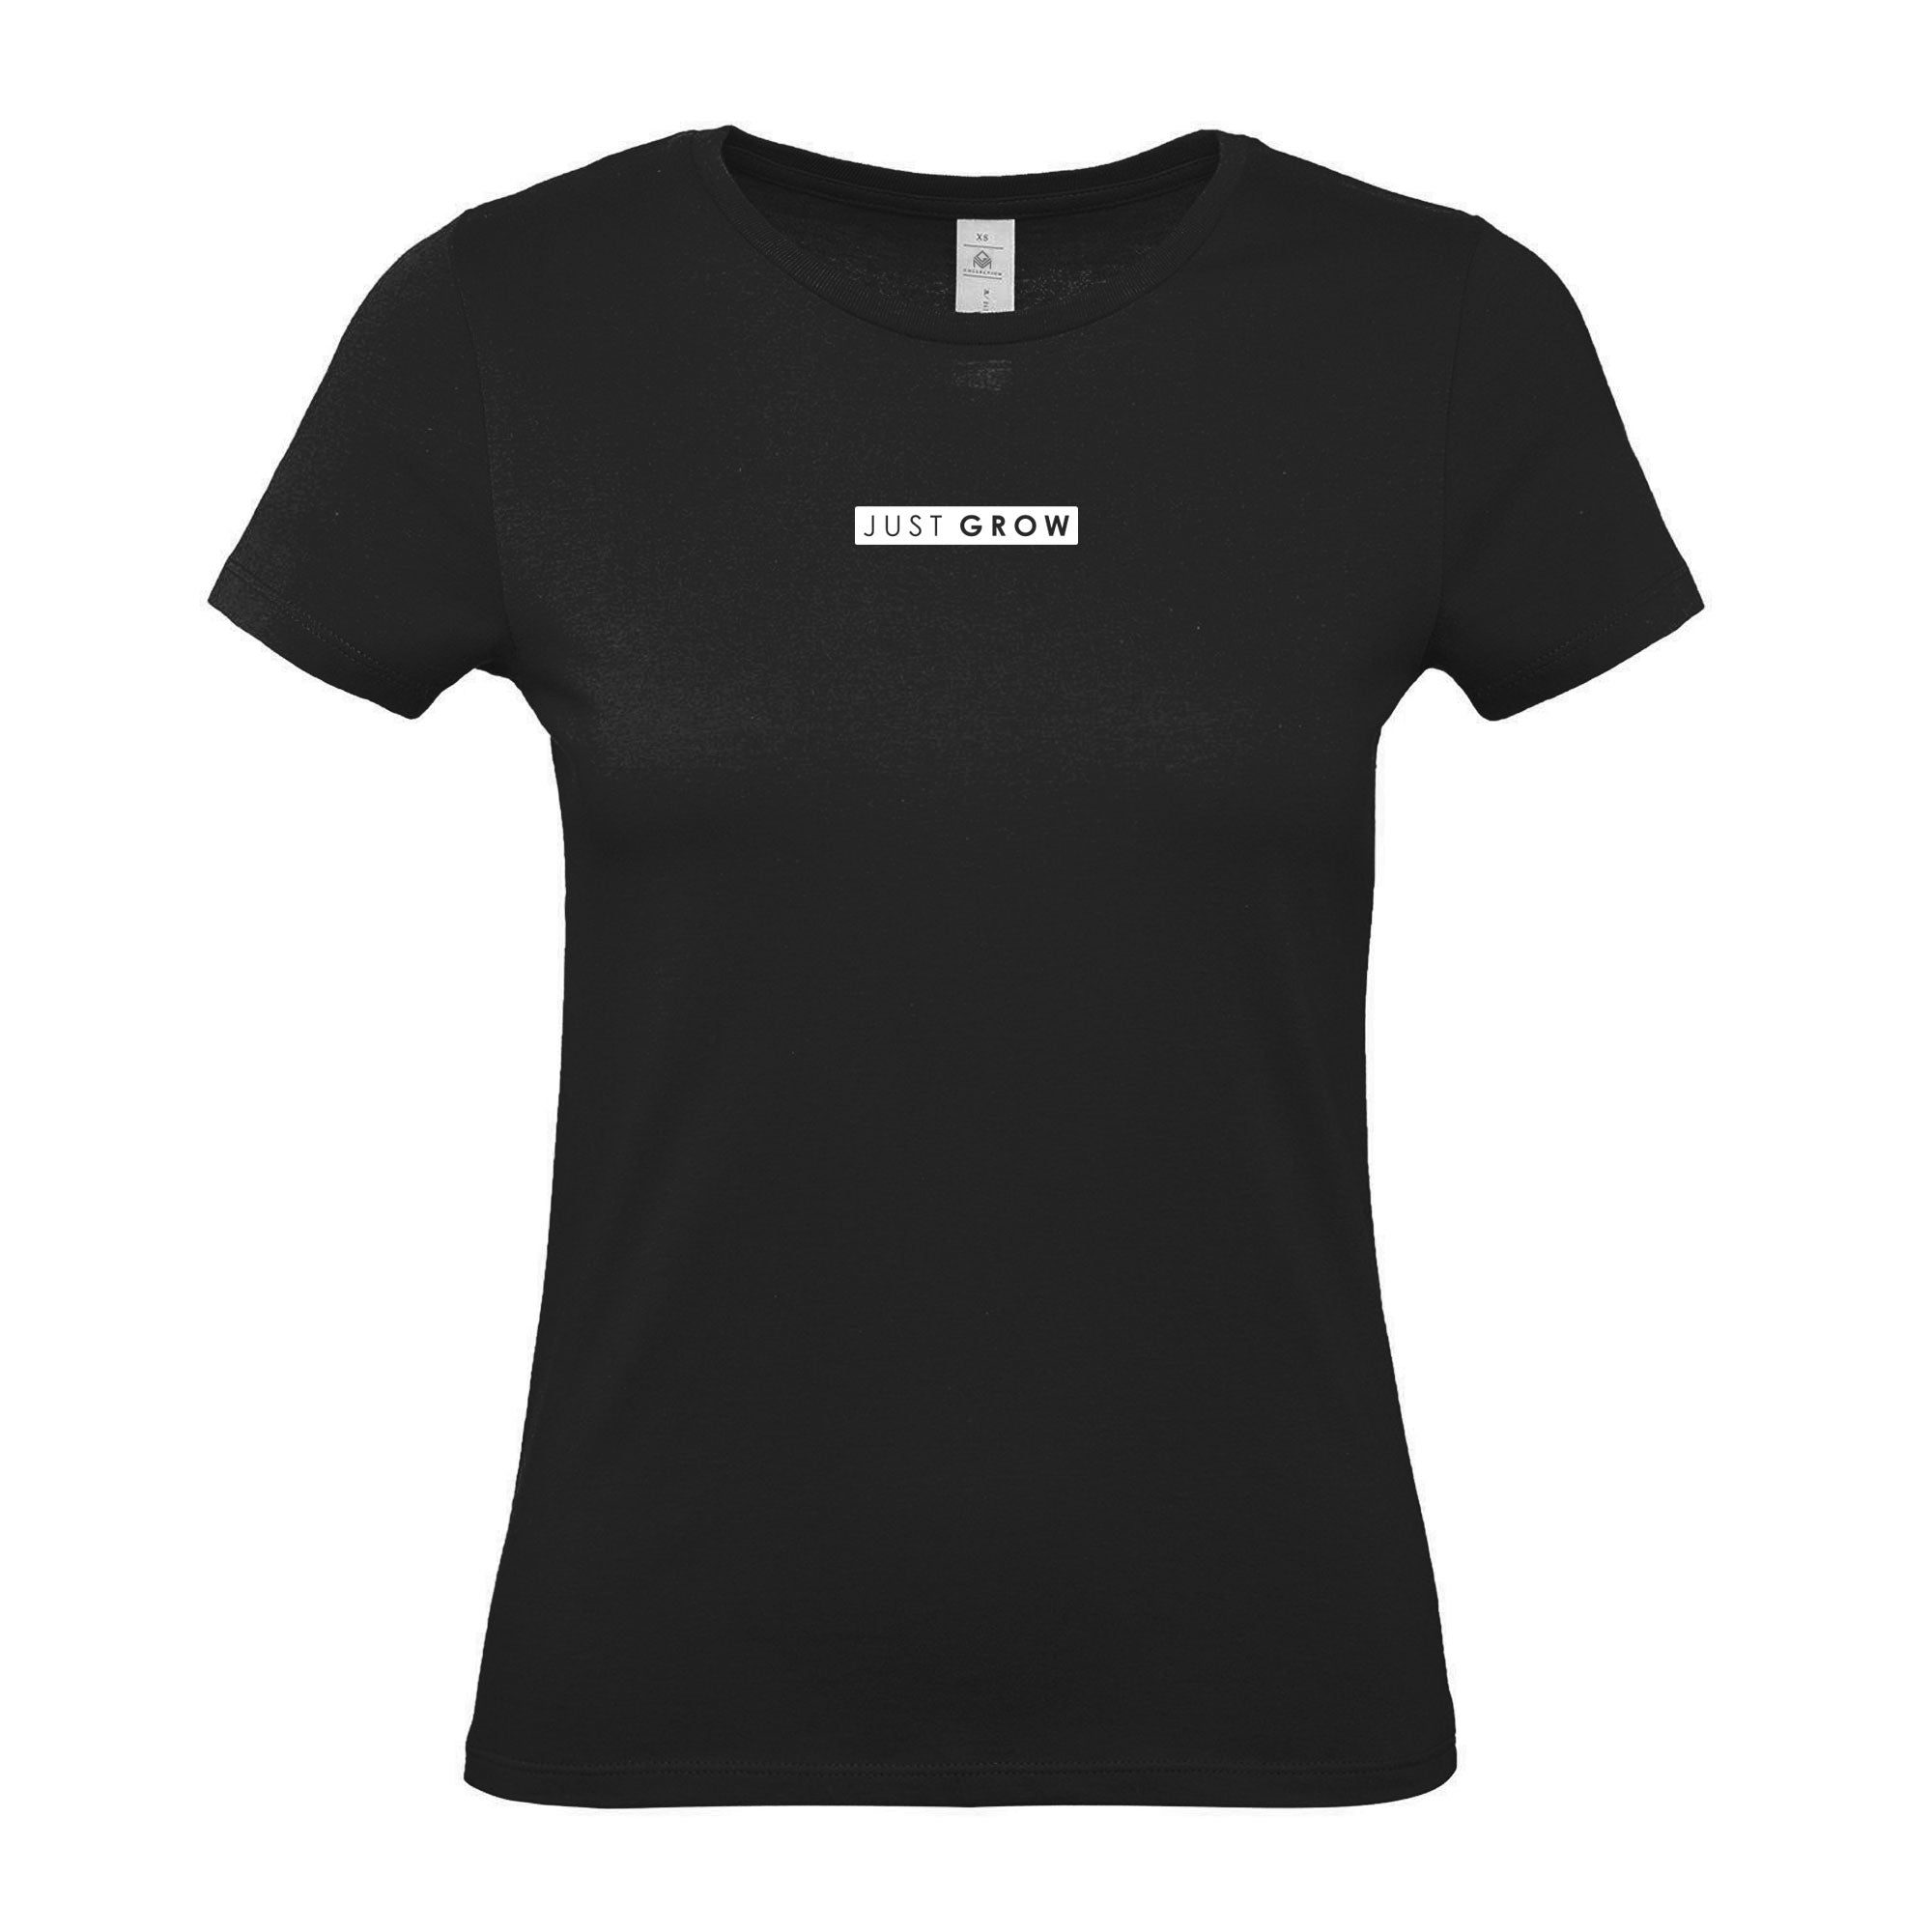 Just GROW - Women's Gym T-Shirt